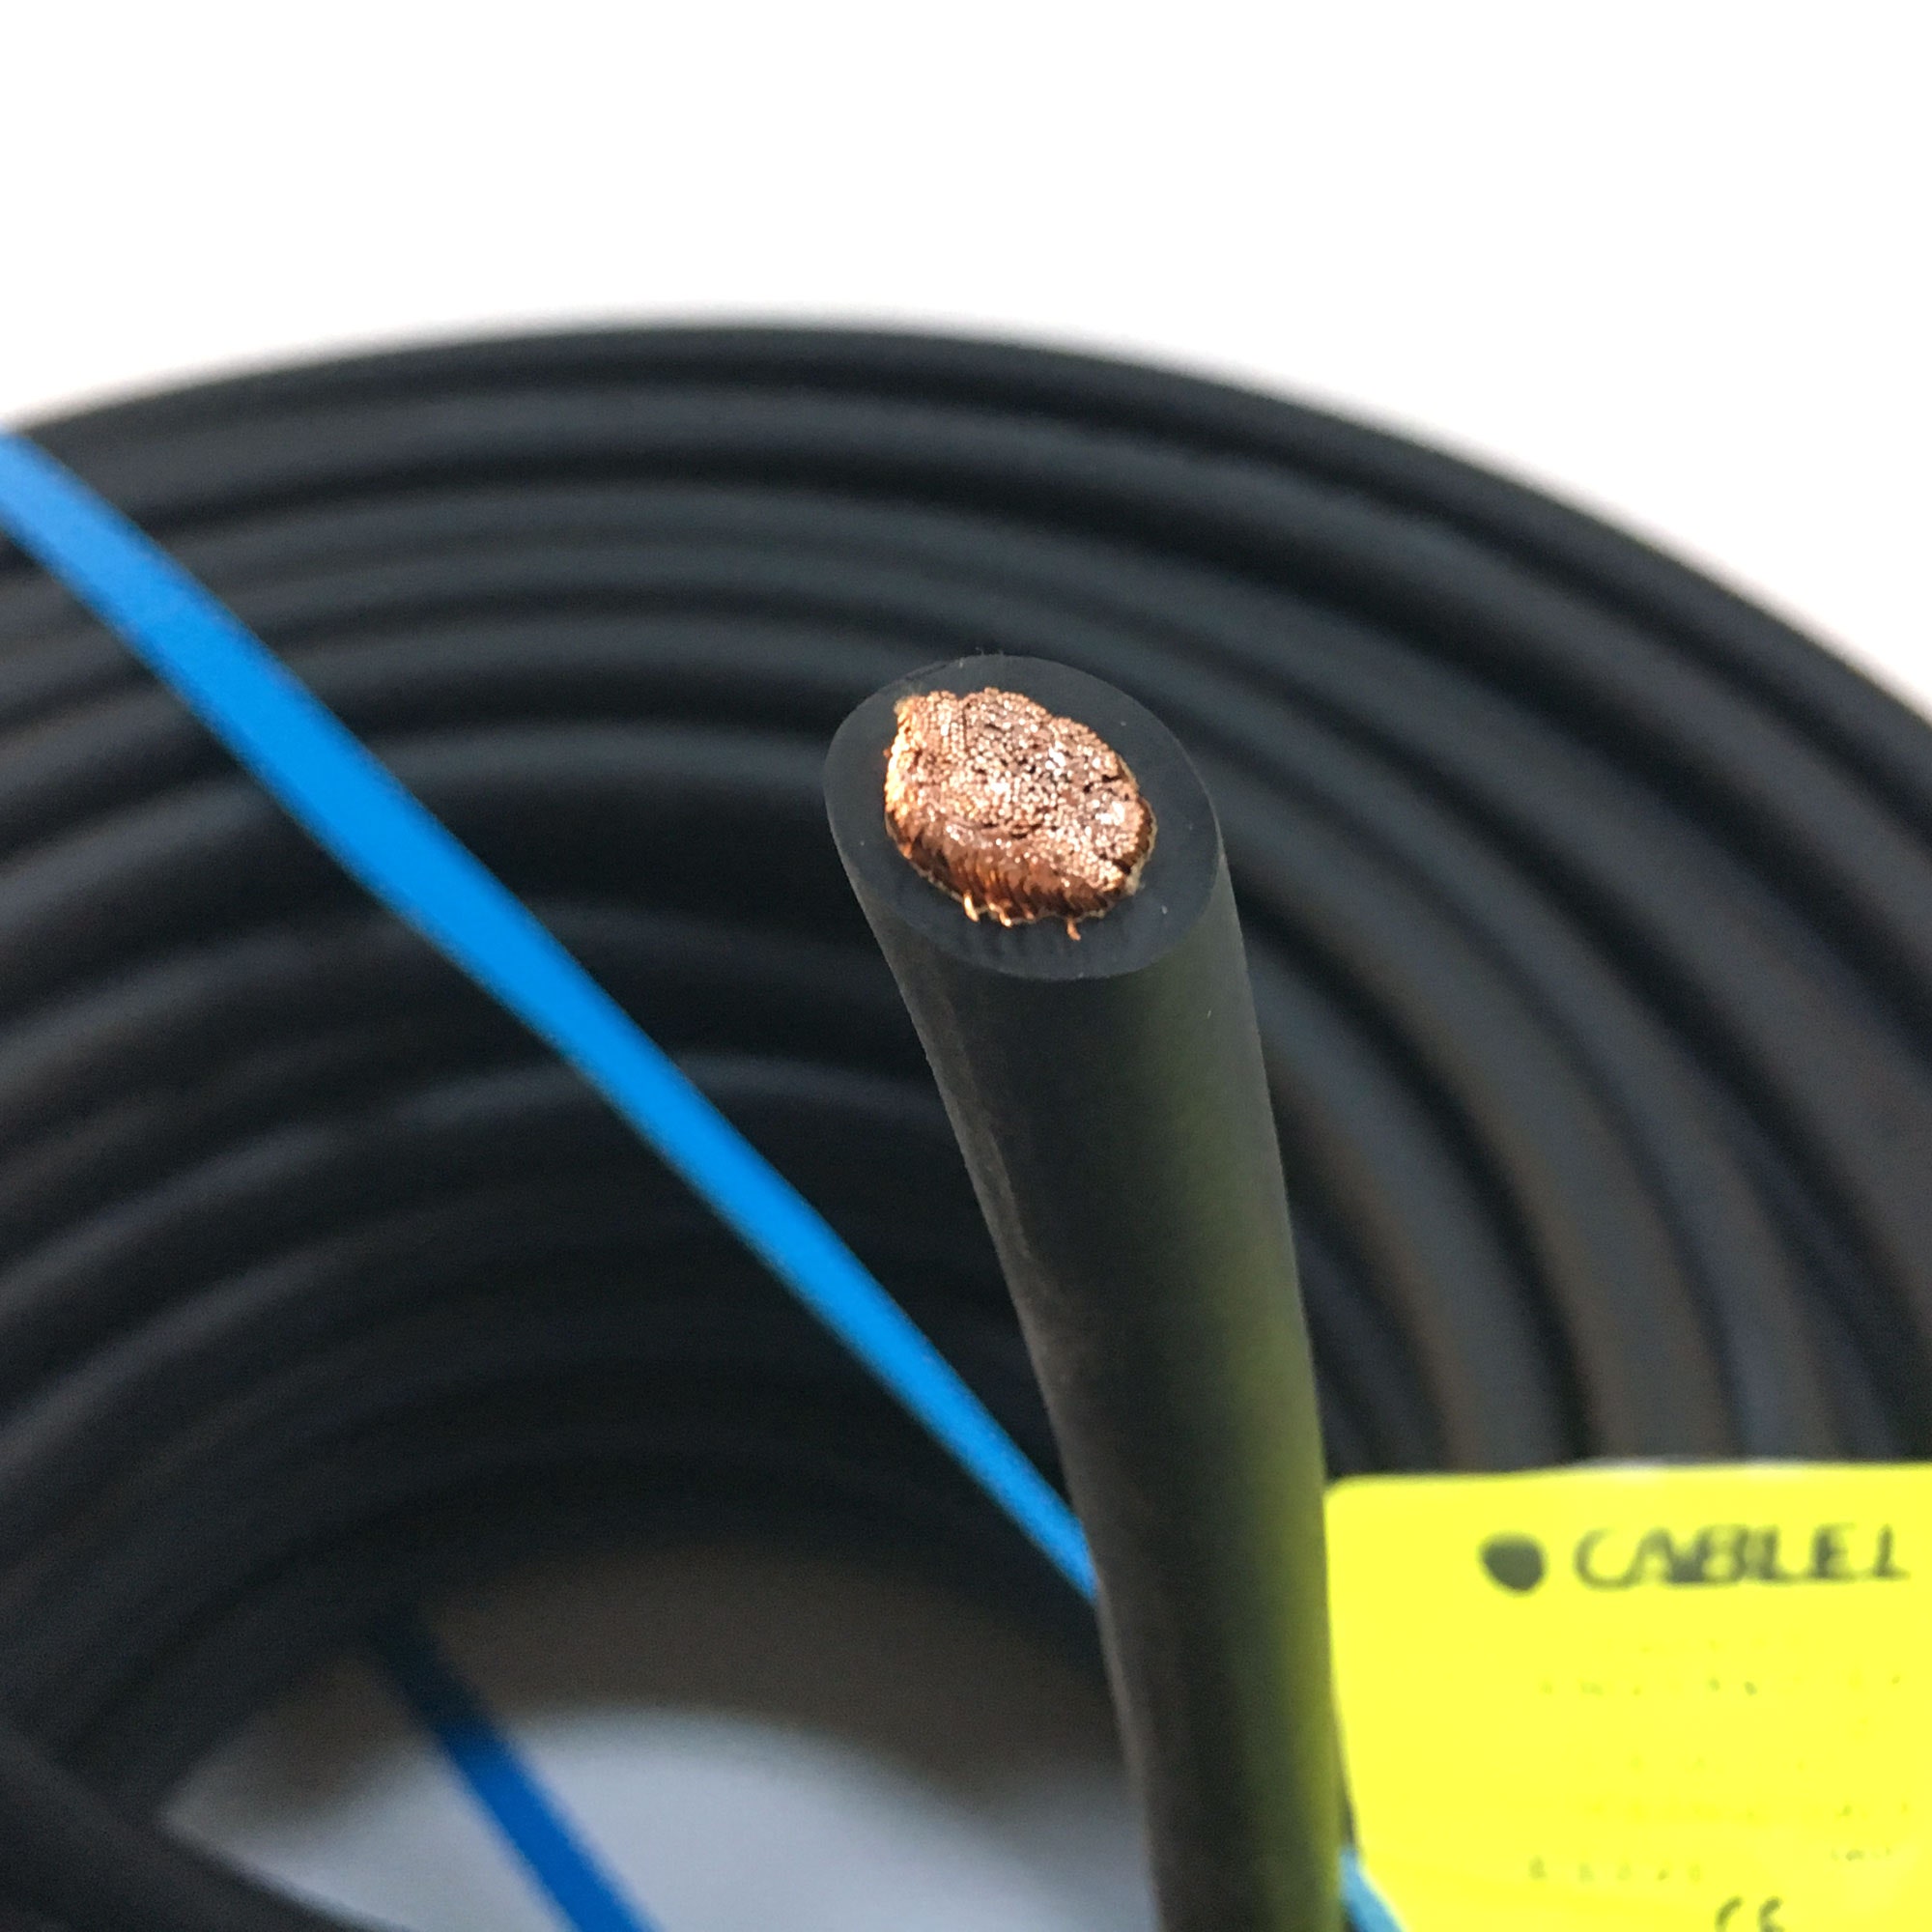 Cablu electric sudura MSUDC 35 mmp